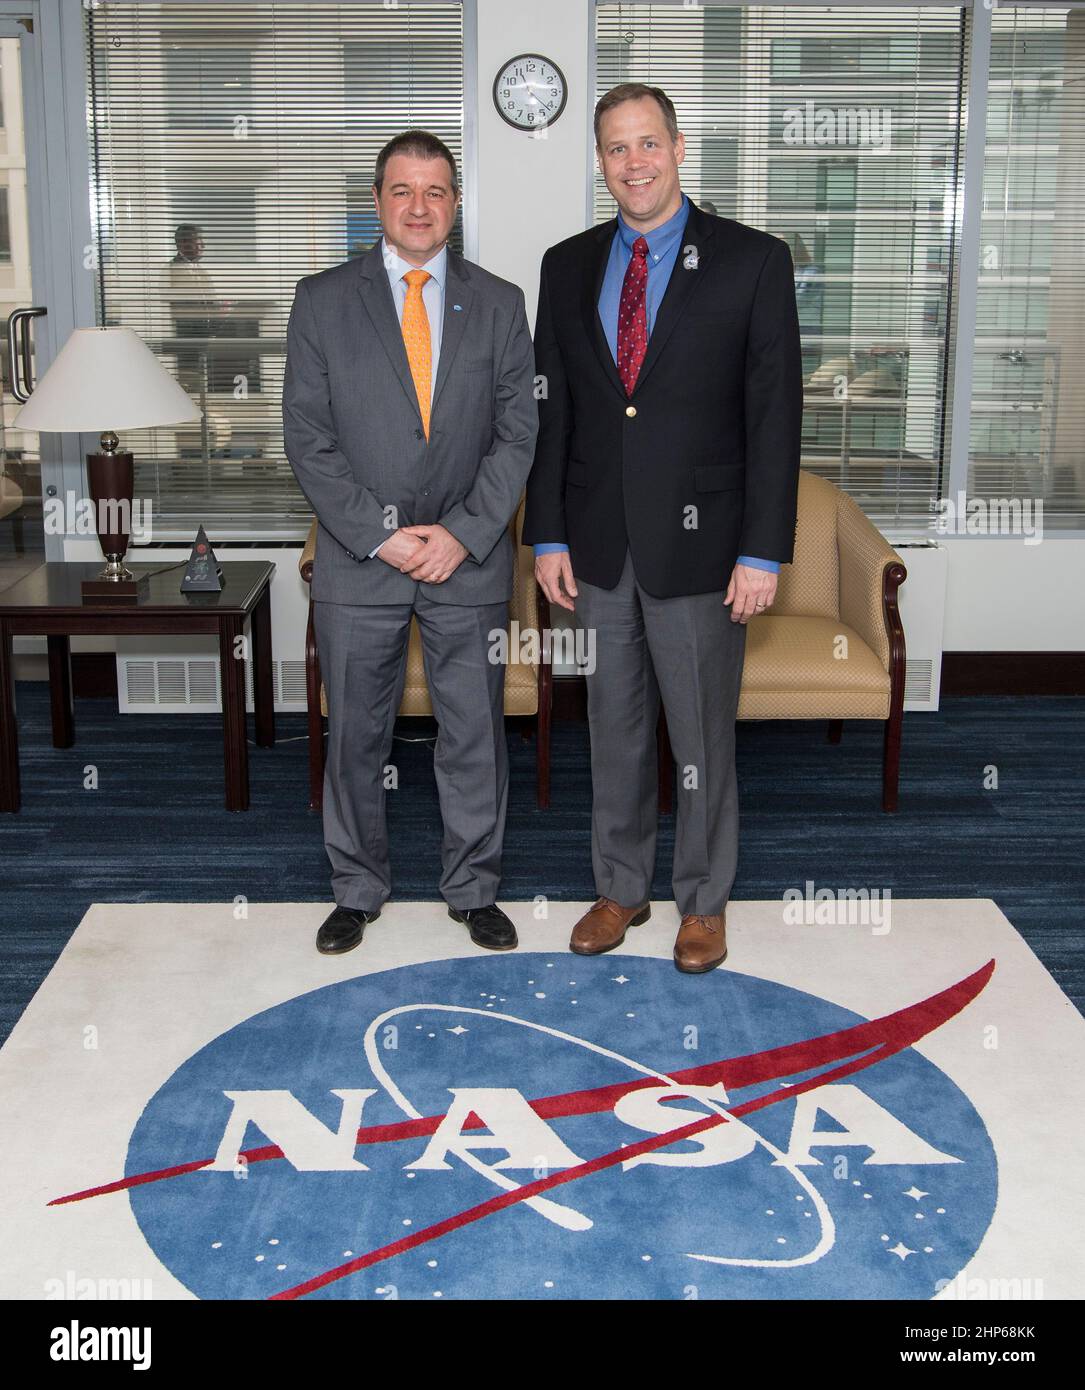 L'amministratore della NASA Jim Bridenstine, a destra, pone per una foto il sig. Raúl Kulichevsky, direttore esecutivo e tecnico dell'Agenzia spaziale Argentina (CONAE), venerdì 29 marzo 2019 presso la sede centrale della NASA a Washington. Foto Stock